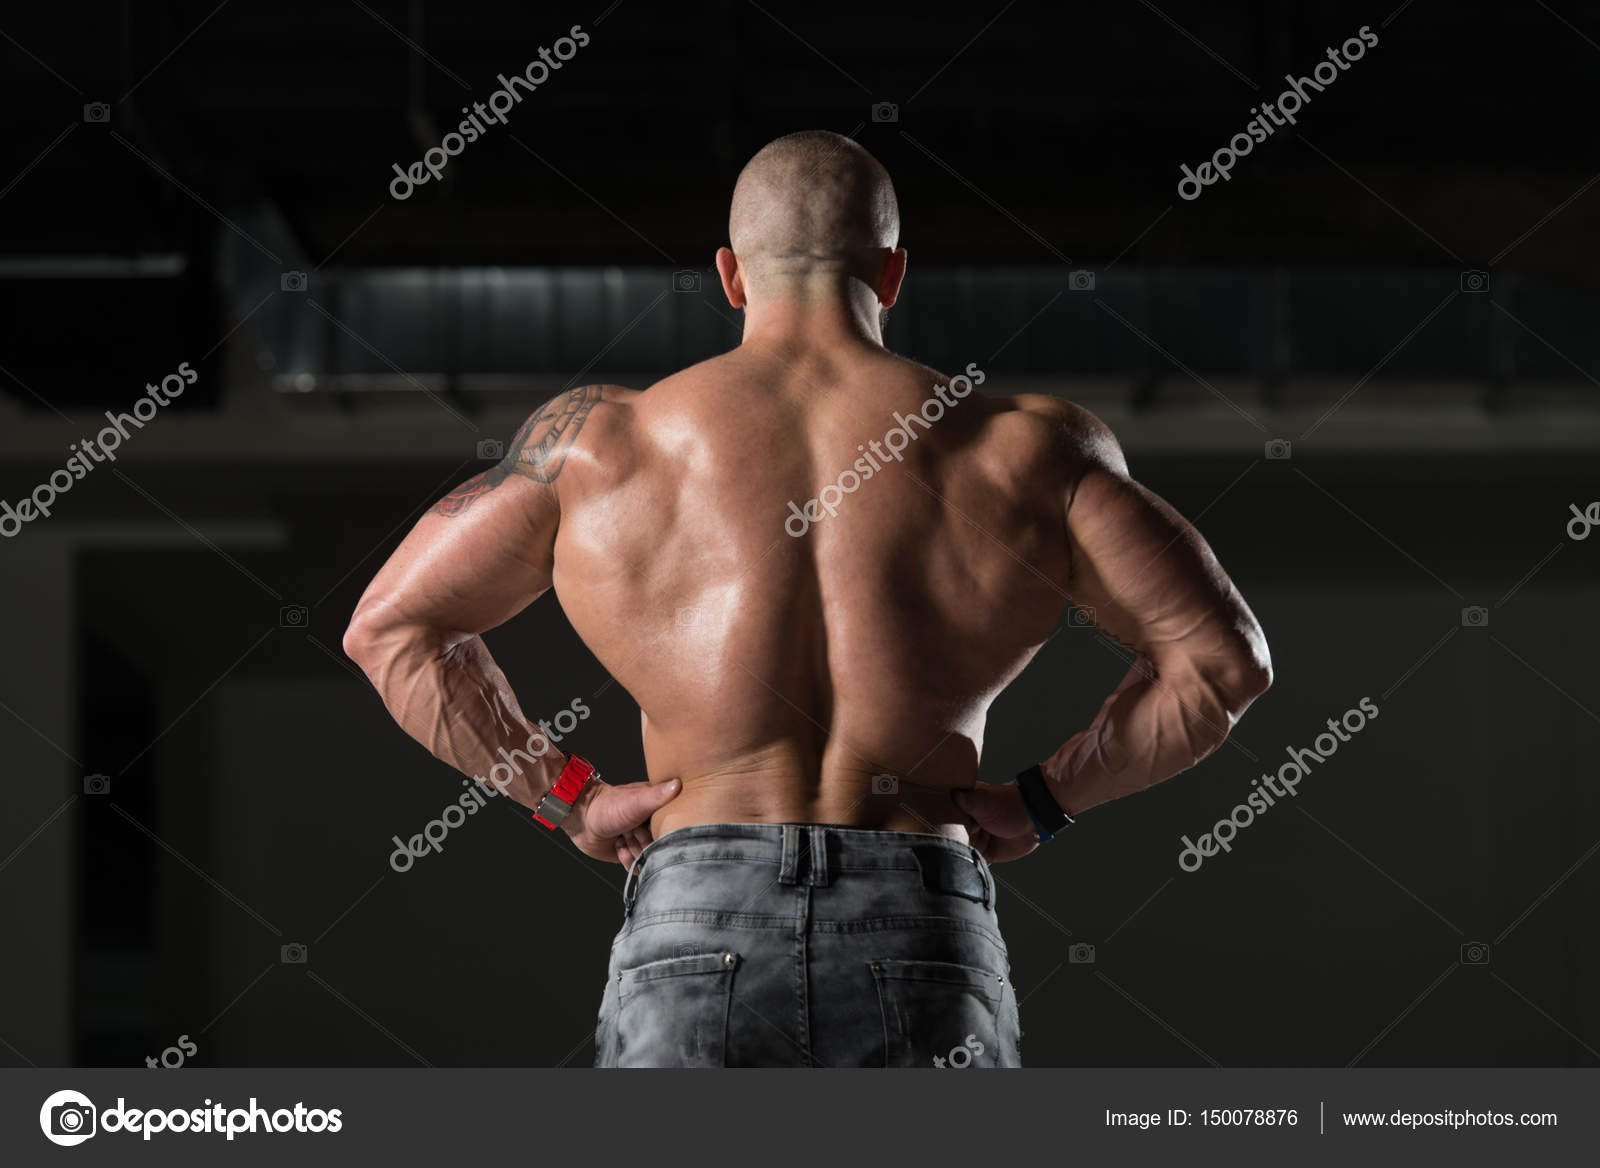 https://st3.depositphotos.com/2389277/15007/i/1600/depositphotos_150078876-stock-photo-muscular-man-flexing-back-muscles.jpg